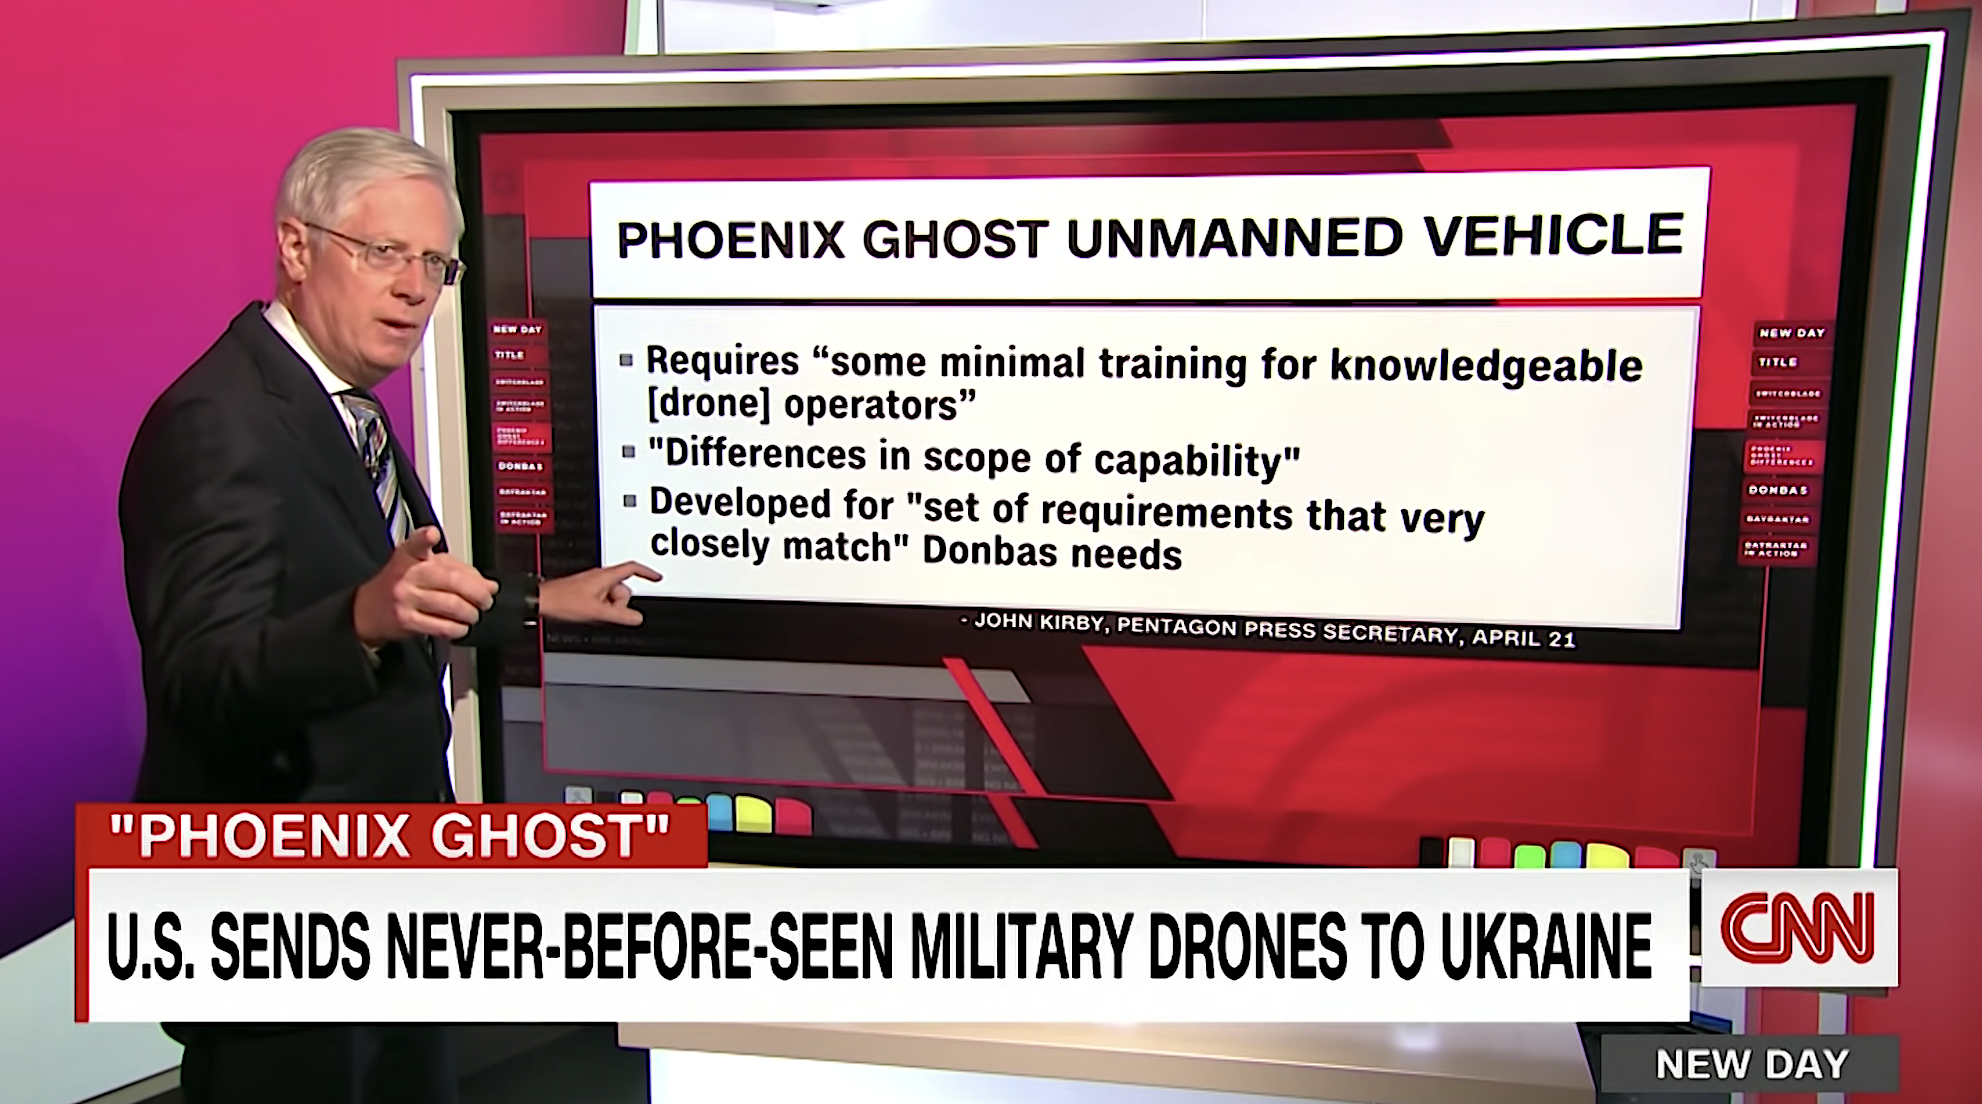 CNN describes Phoenix Ghost drones